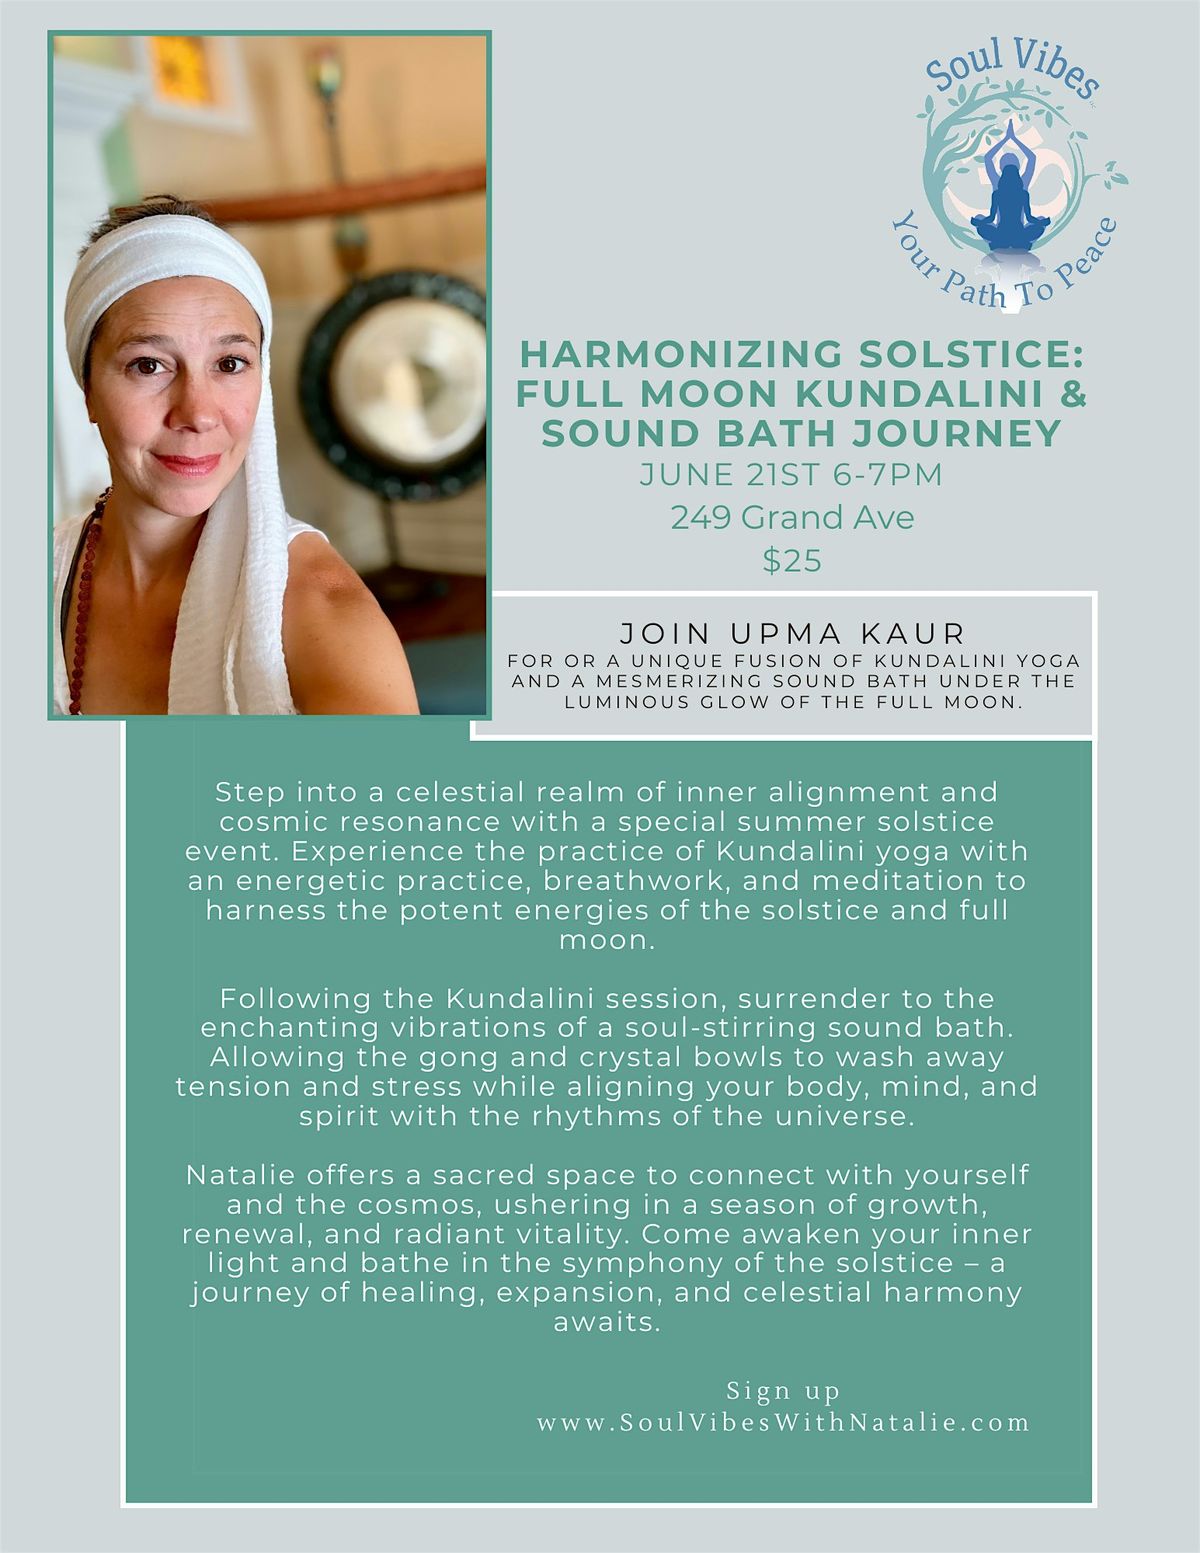 Harmonizing Solstice: Full Moon Kundalini & Sound Bath Journey